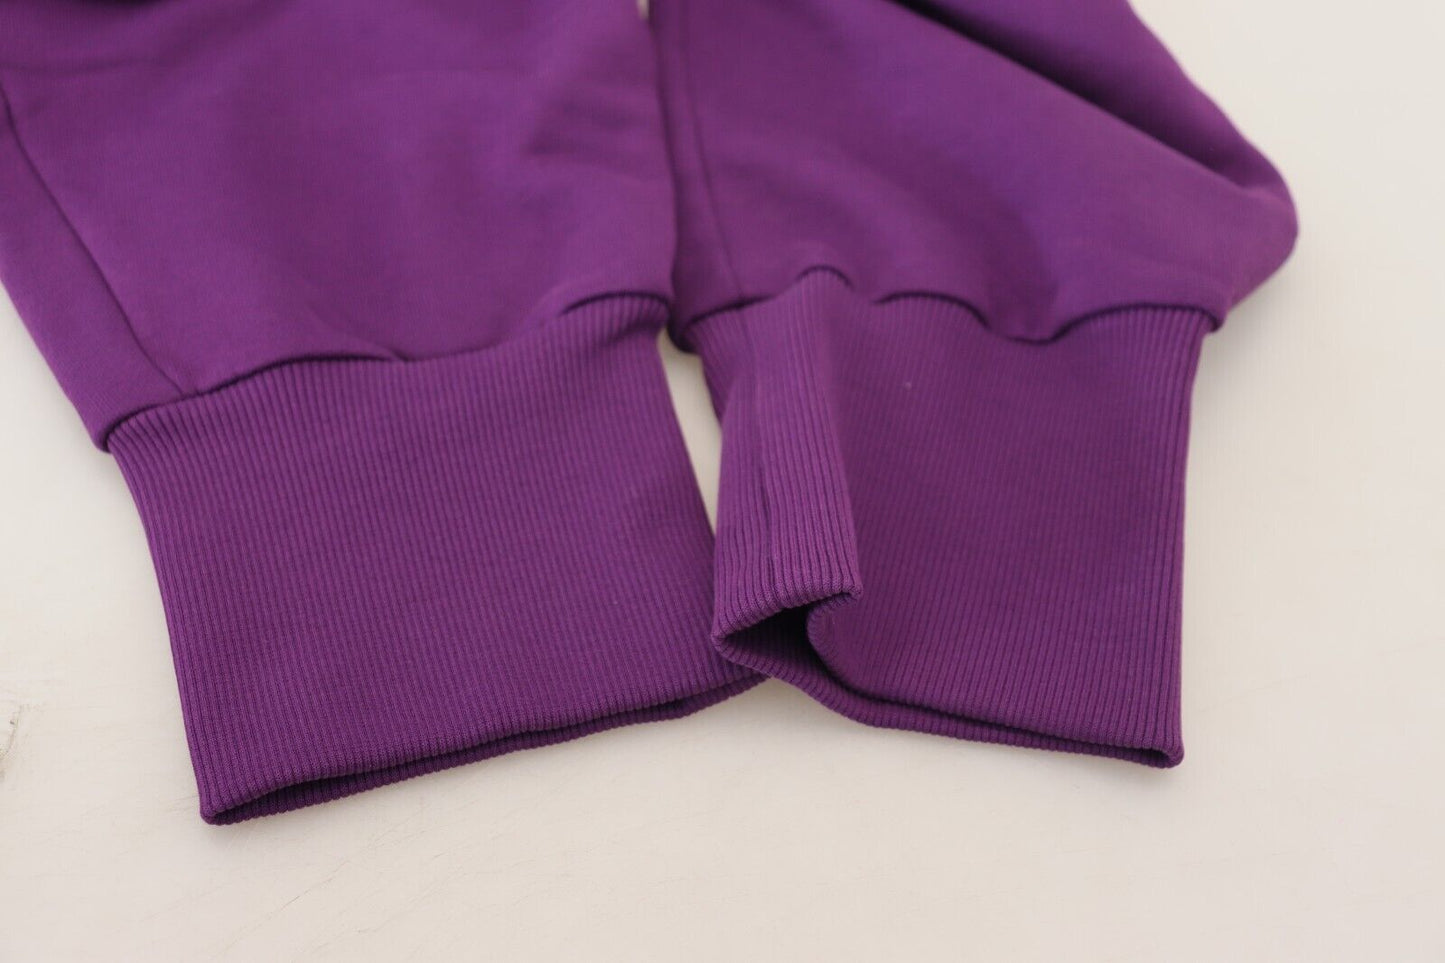 Dolce & Gabbana Purple Cotton Cargo Sweatpants Jogging Pants